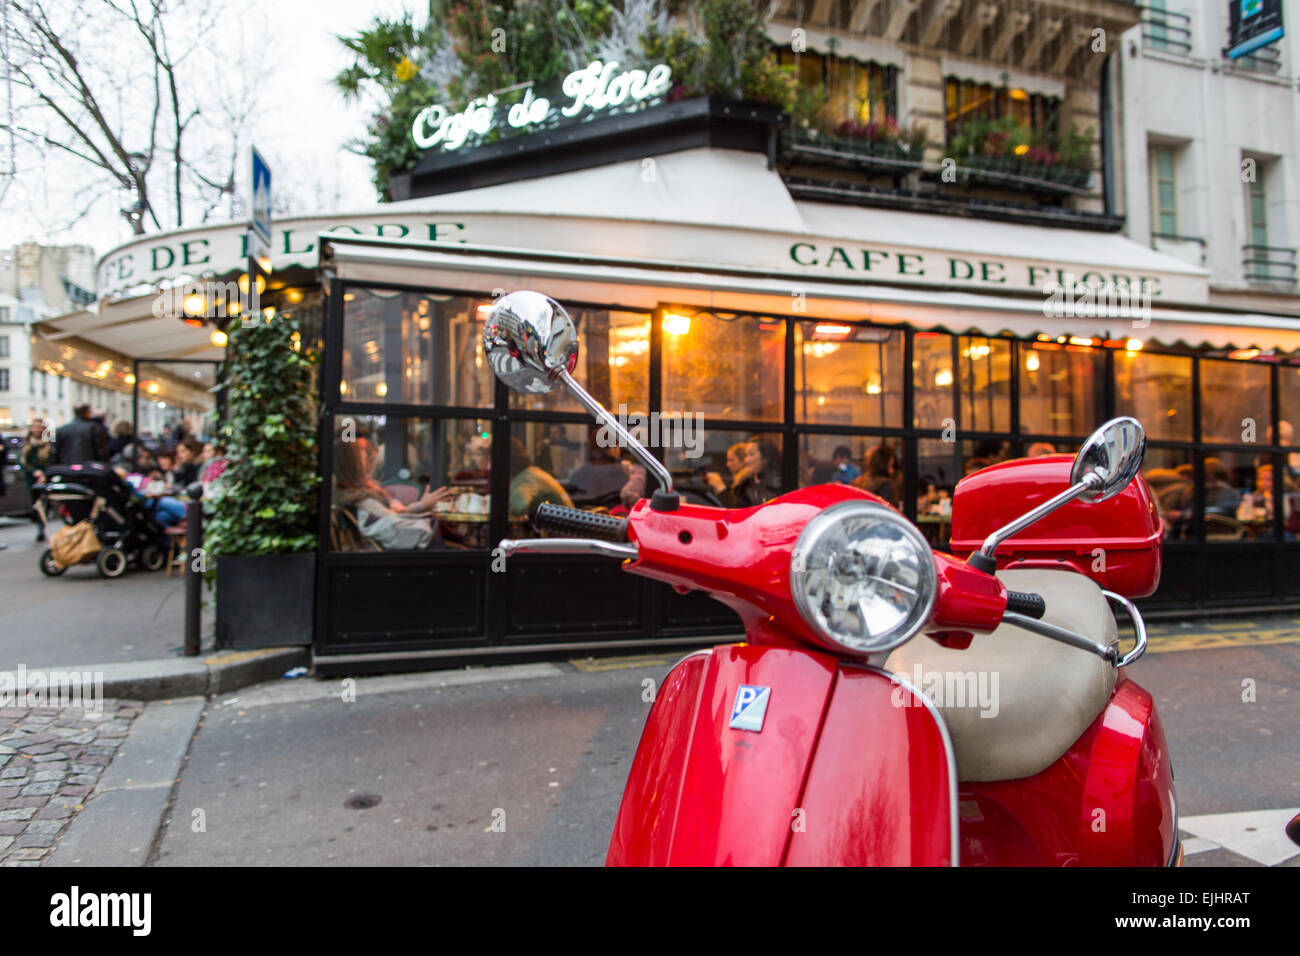 Cafe de Flore exterior, Paris, France Stock Photo